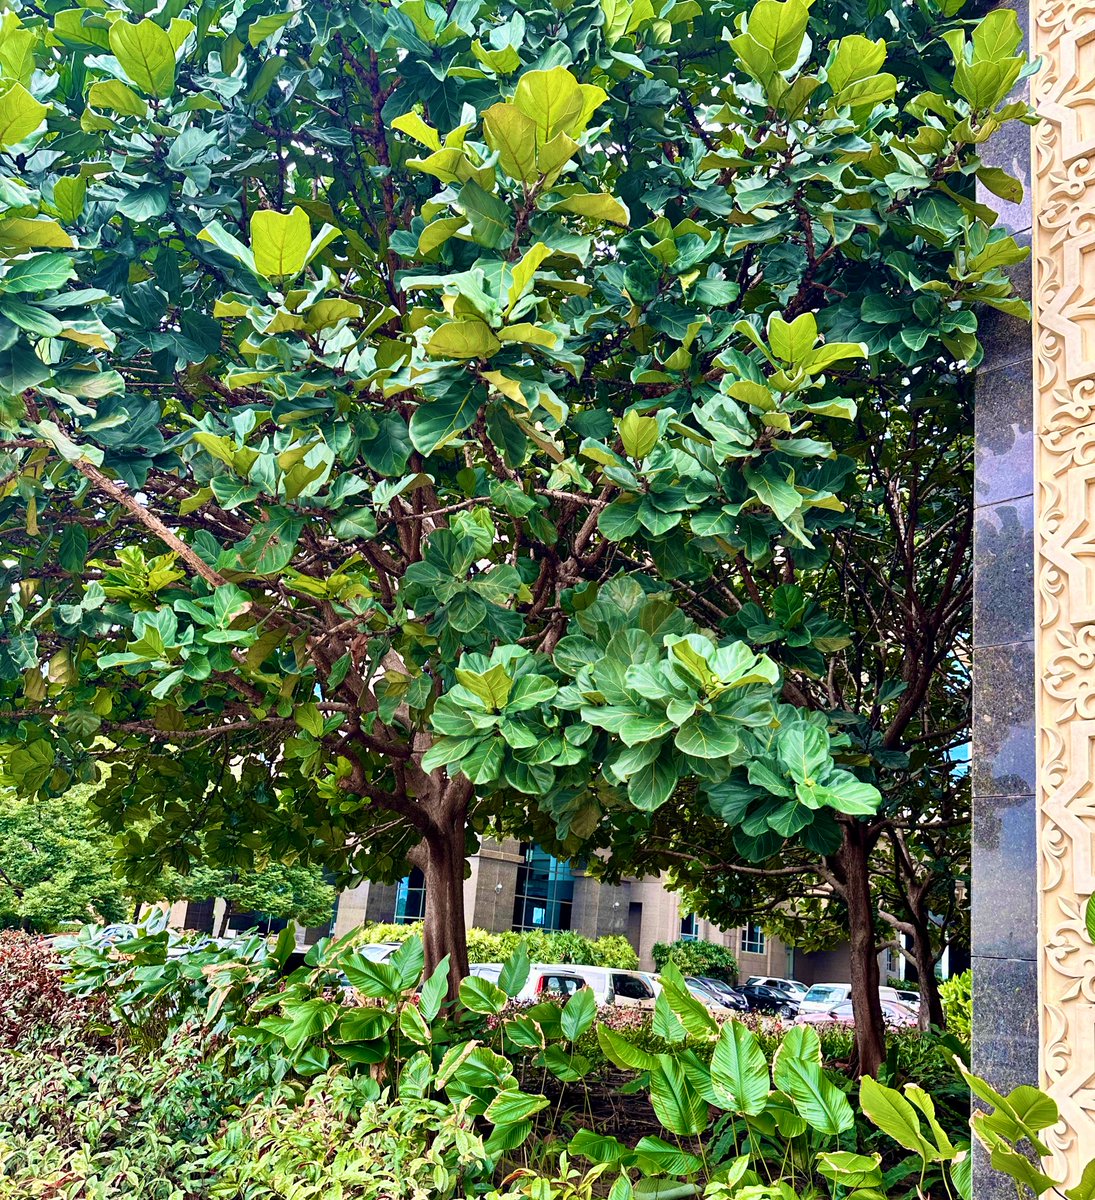 樹高約7mの Ficus lyrata(カシワバゴムノキ)
日本でもお馴染みの観葉植物

この種の花嚢(果実に見えるやつ)を初めて見た。
形から推測するとメス。
アフリカ原産なので送粉コバチはいないと思うけど、割って確認したかった。

サバ州庁の敷地ではさすがに登れないので、今度パチンコで撃ち落とそう